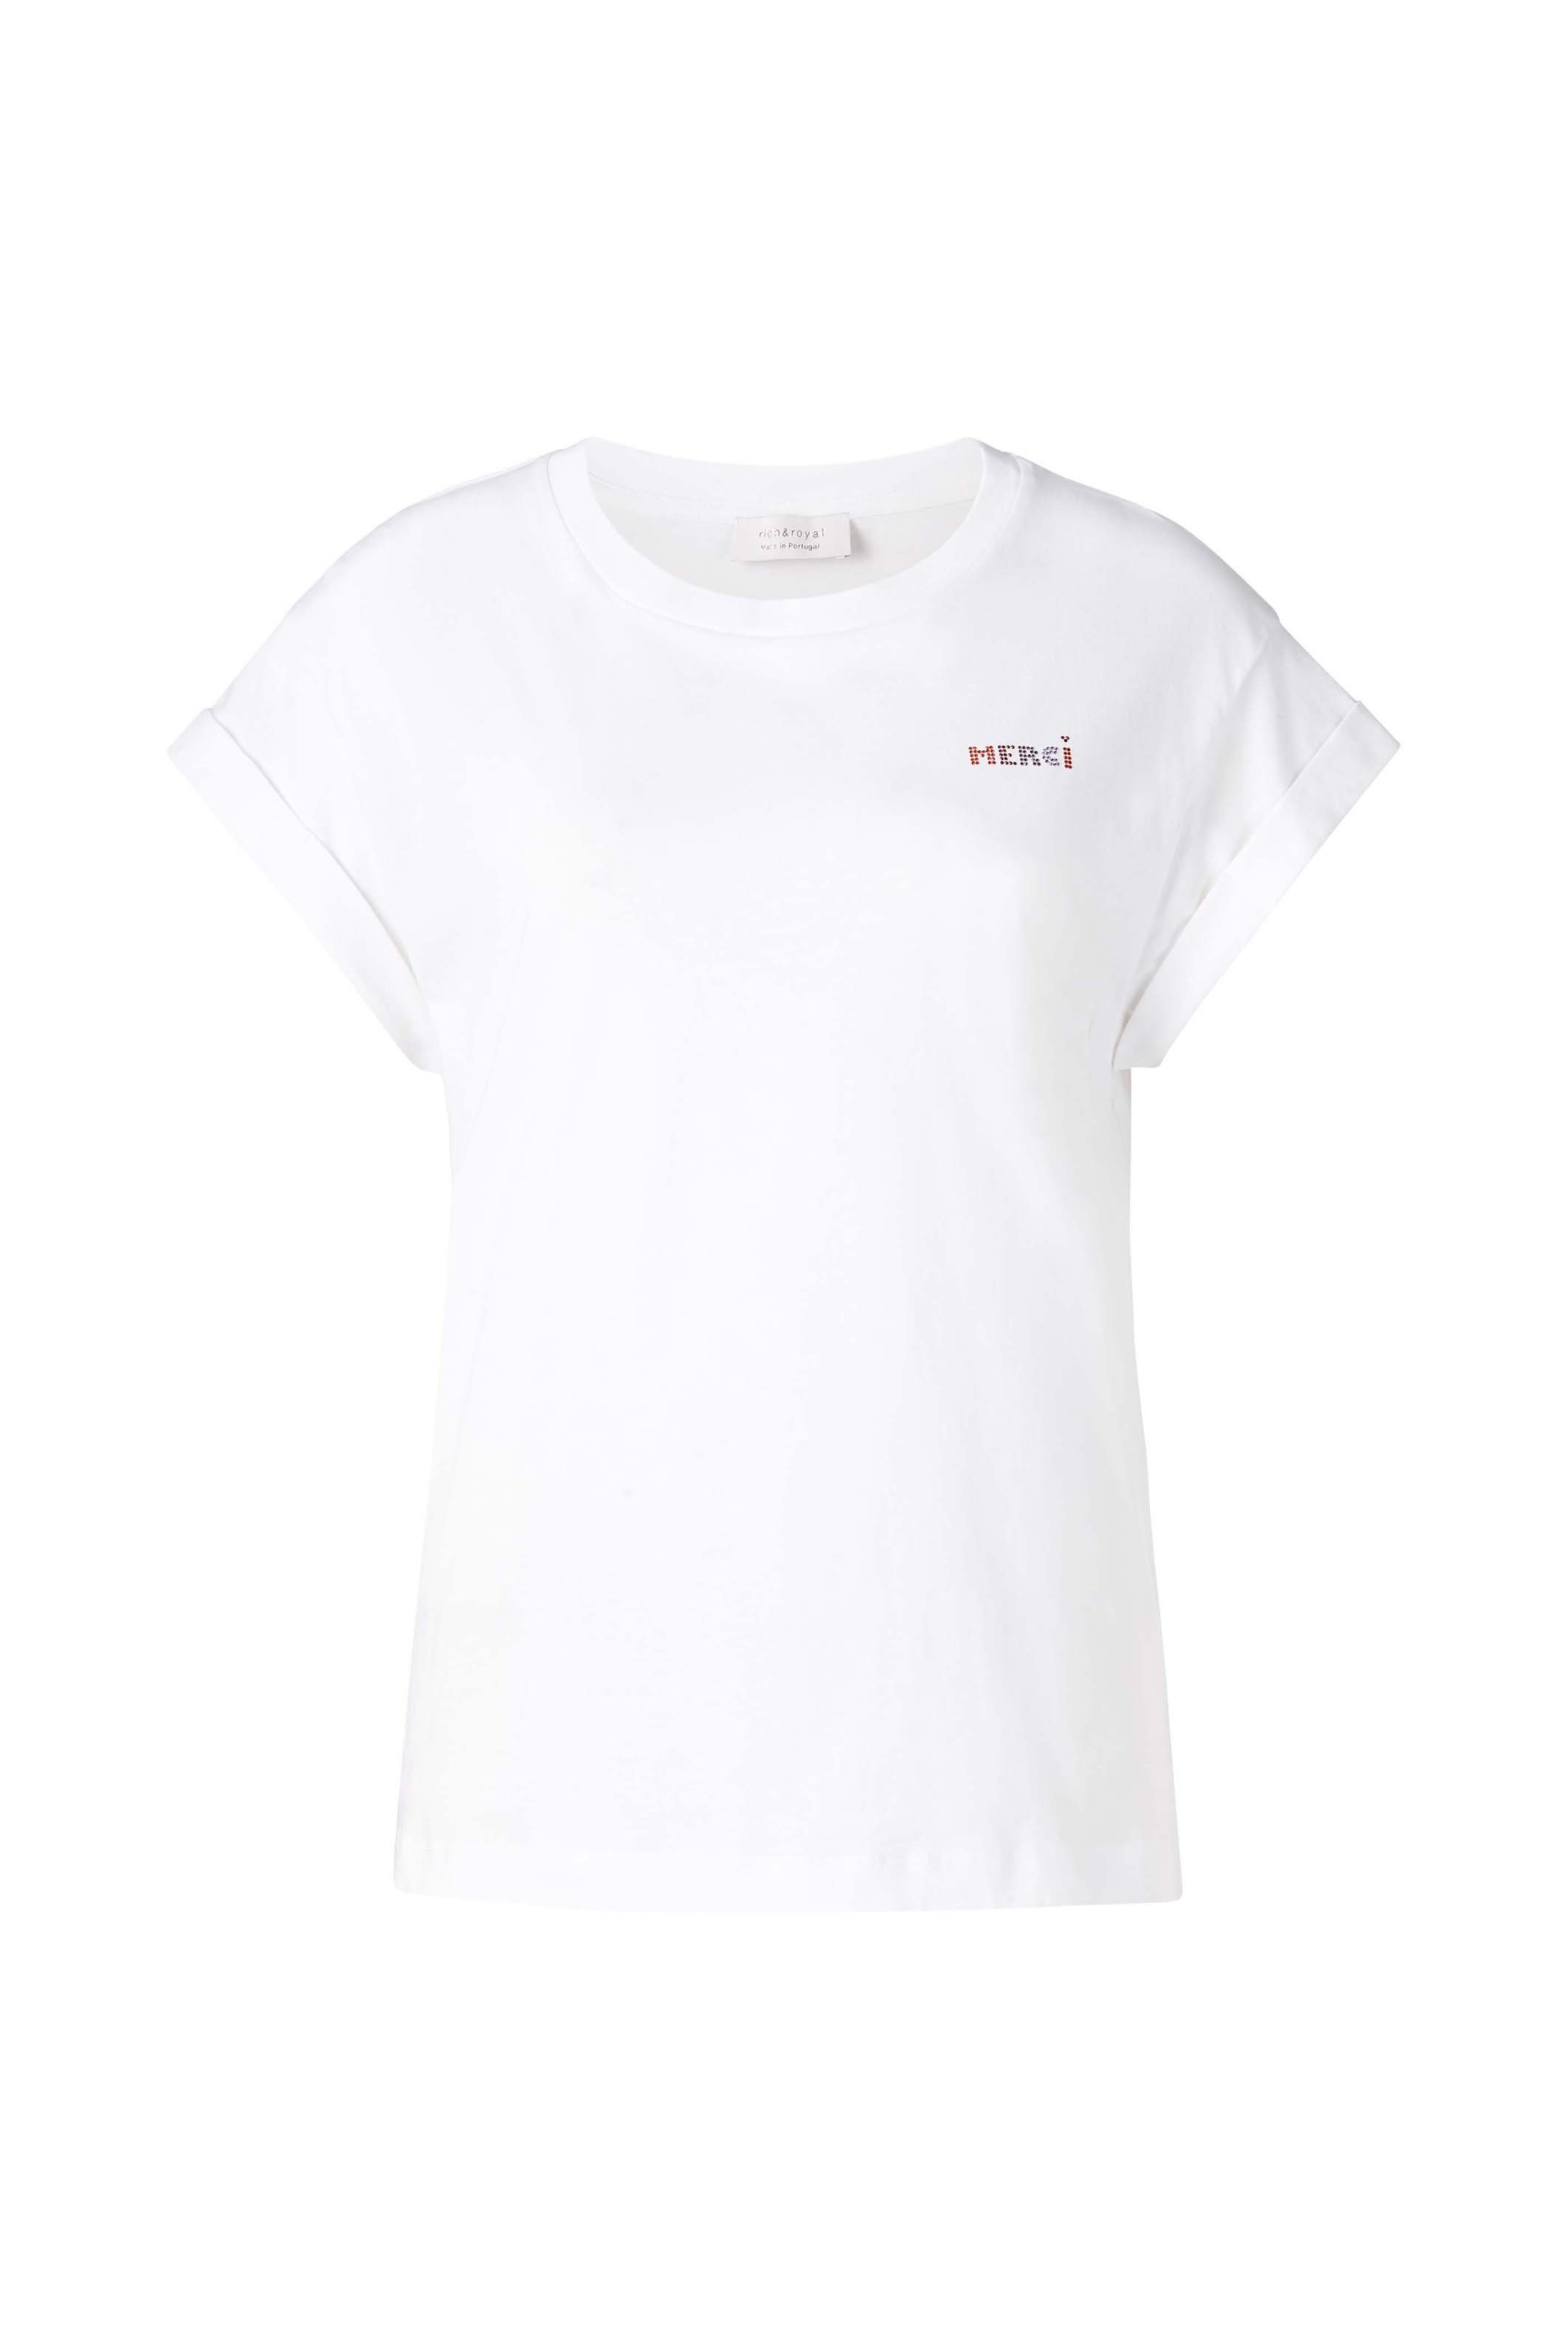 Rich & Royal T-Shirt weiß Brusthöhe original Glitzer-Print mit in